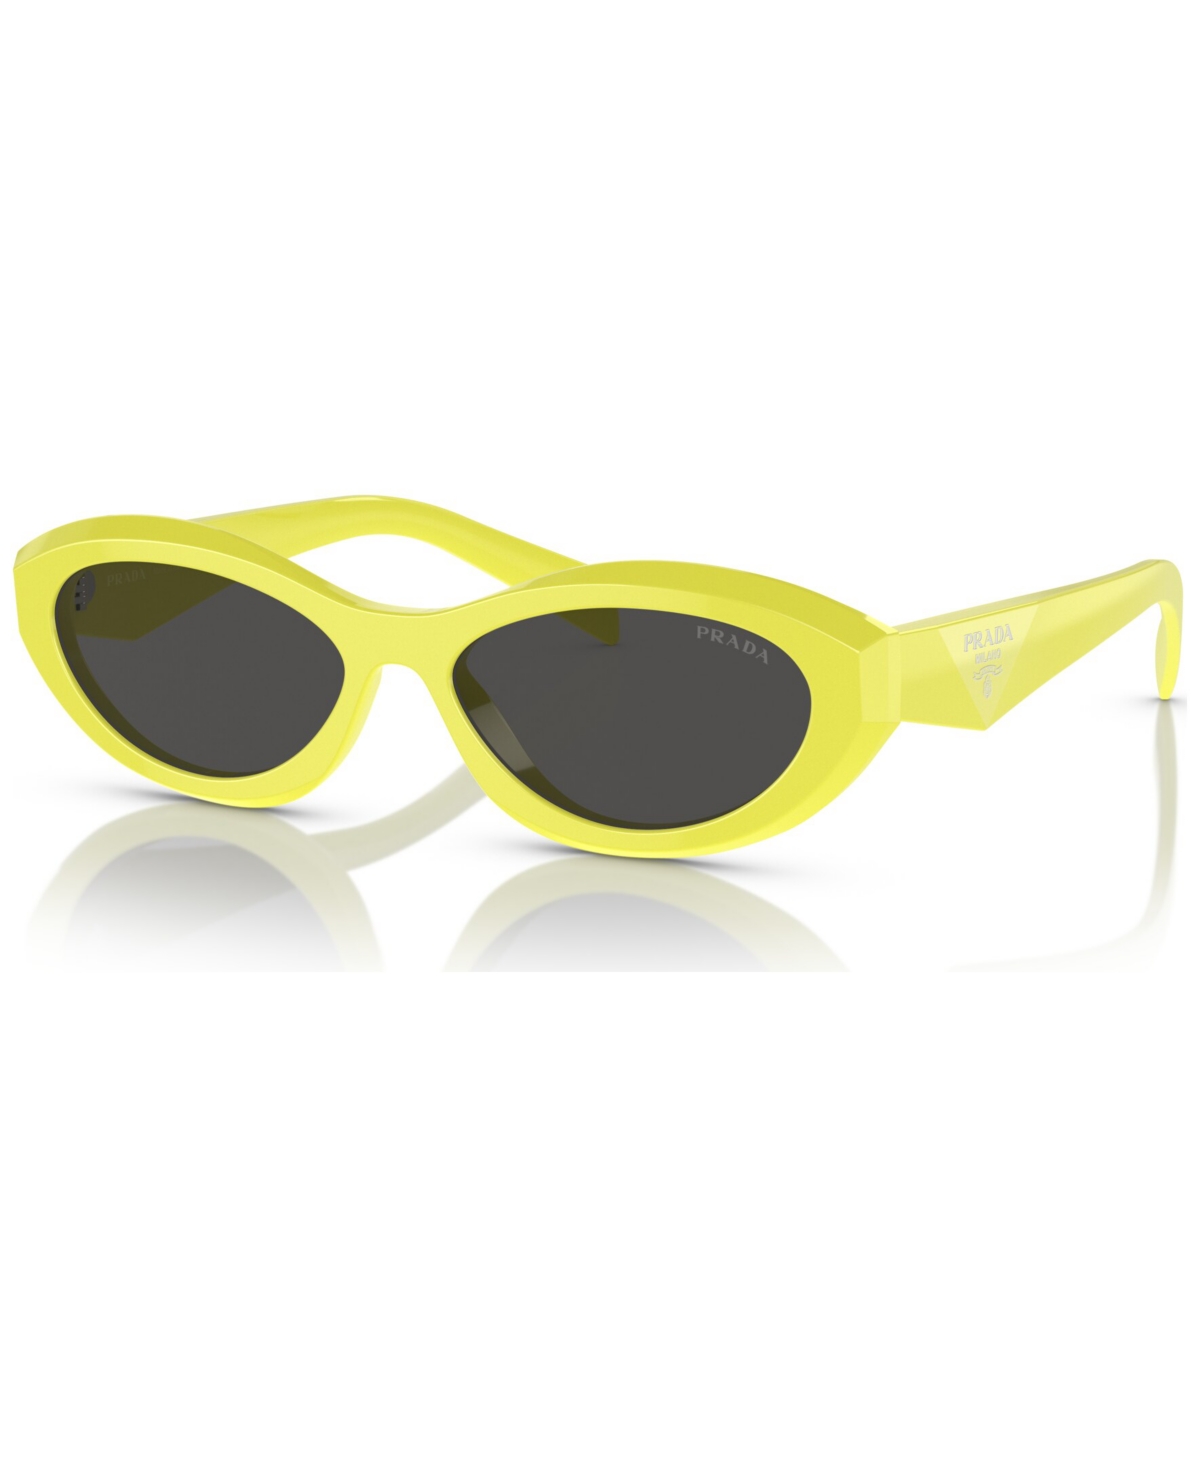 Prada Women's Sunglasses, Pr 26zs In Dark / Gray